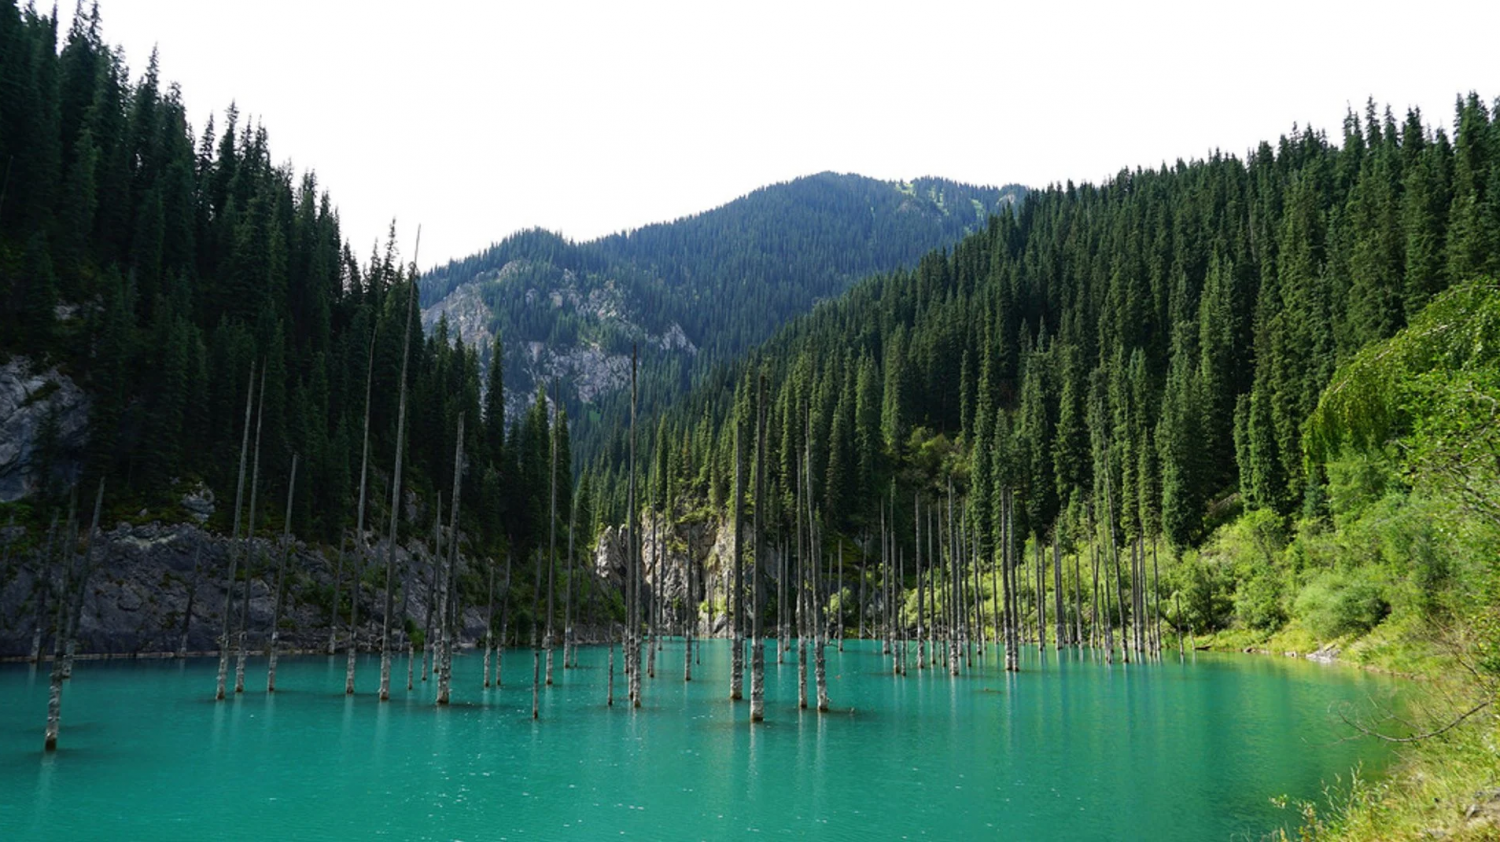 Khám phá khu rừng bí ẩn chìm dưới hồ nước ở Kazakhstan